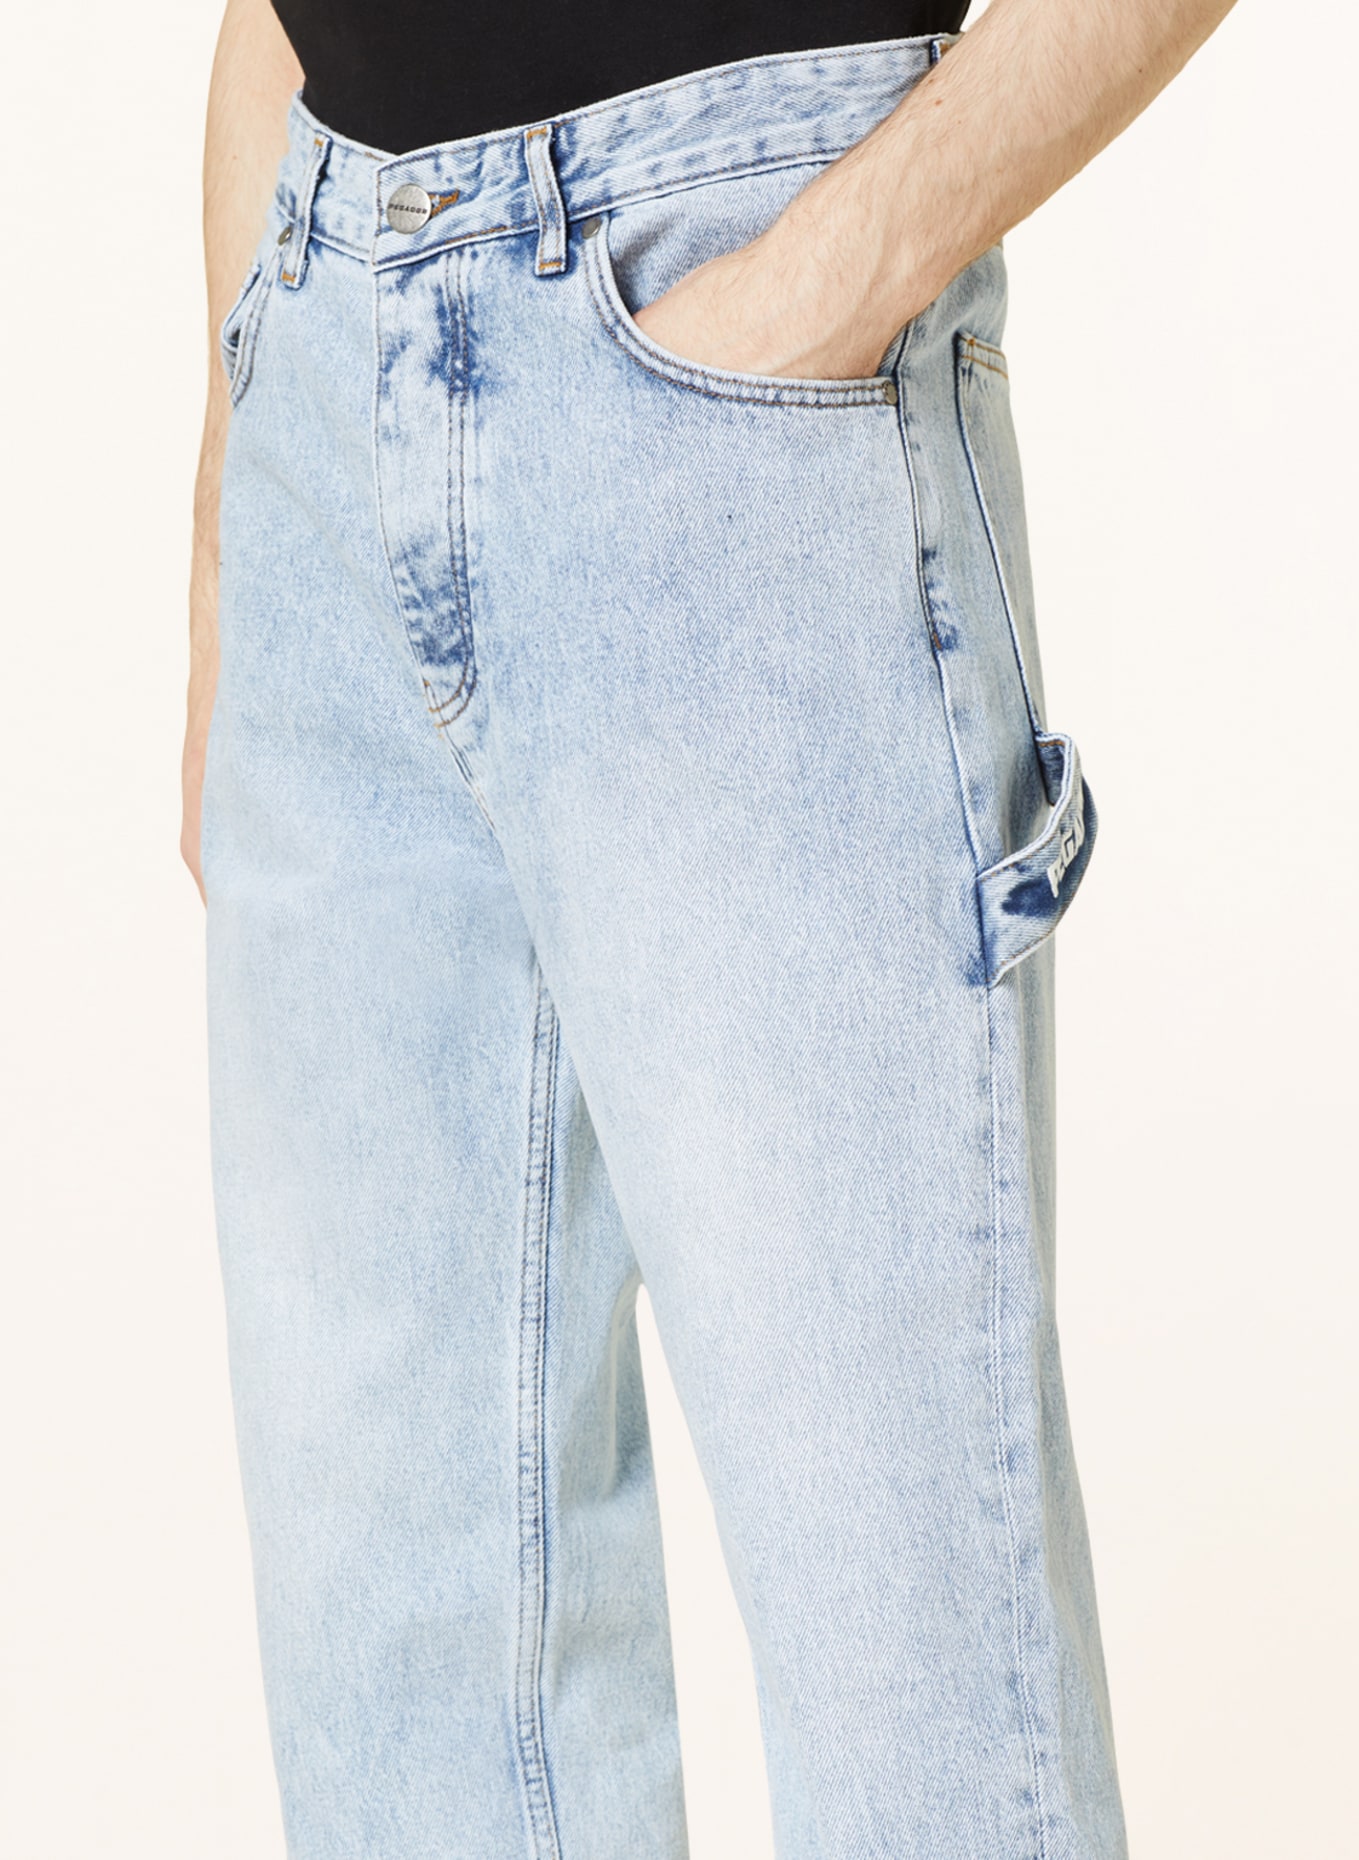 PEGADOR Jeans slim fit, Color: 076 washed light blue (Image 5)